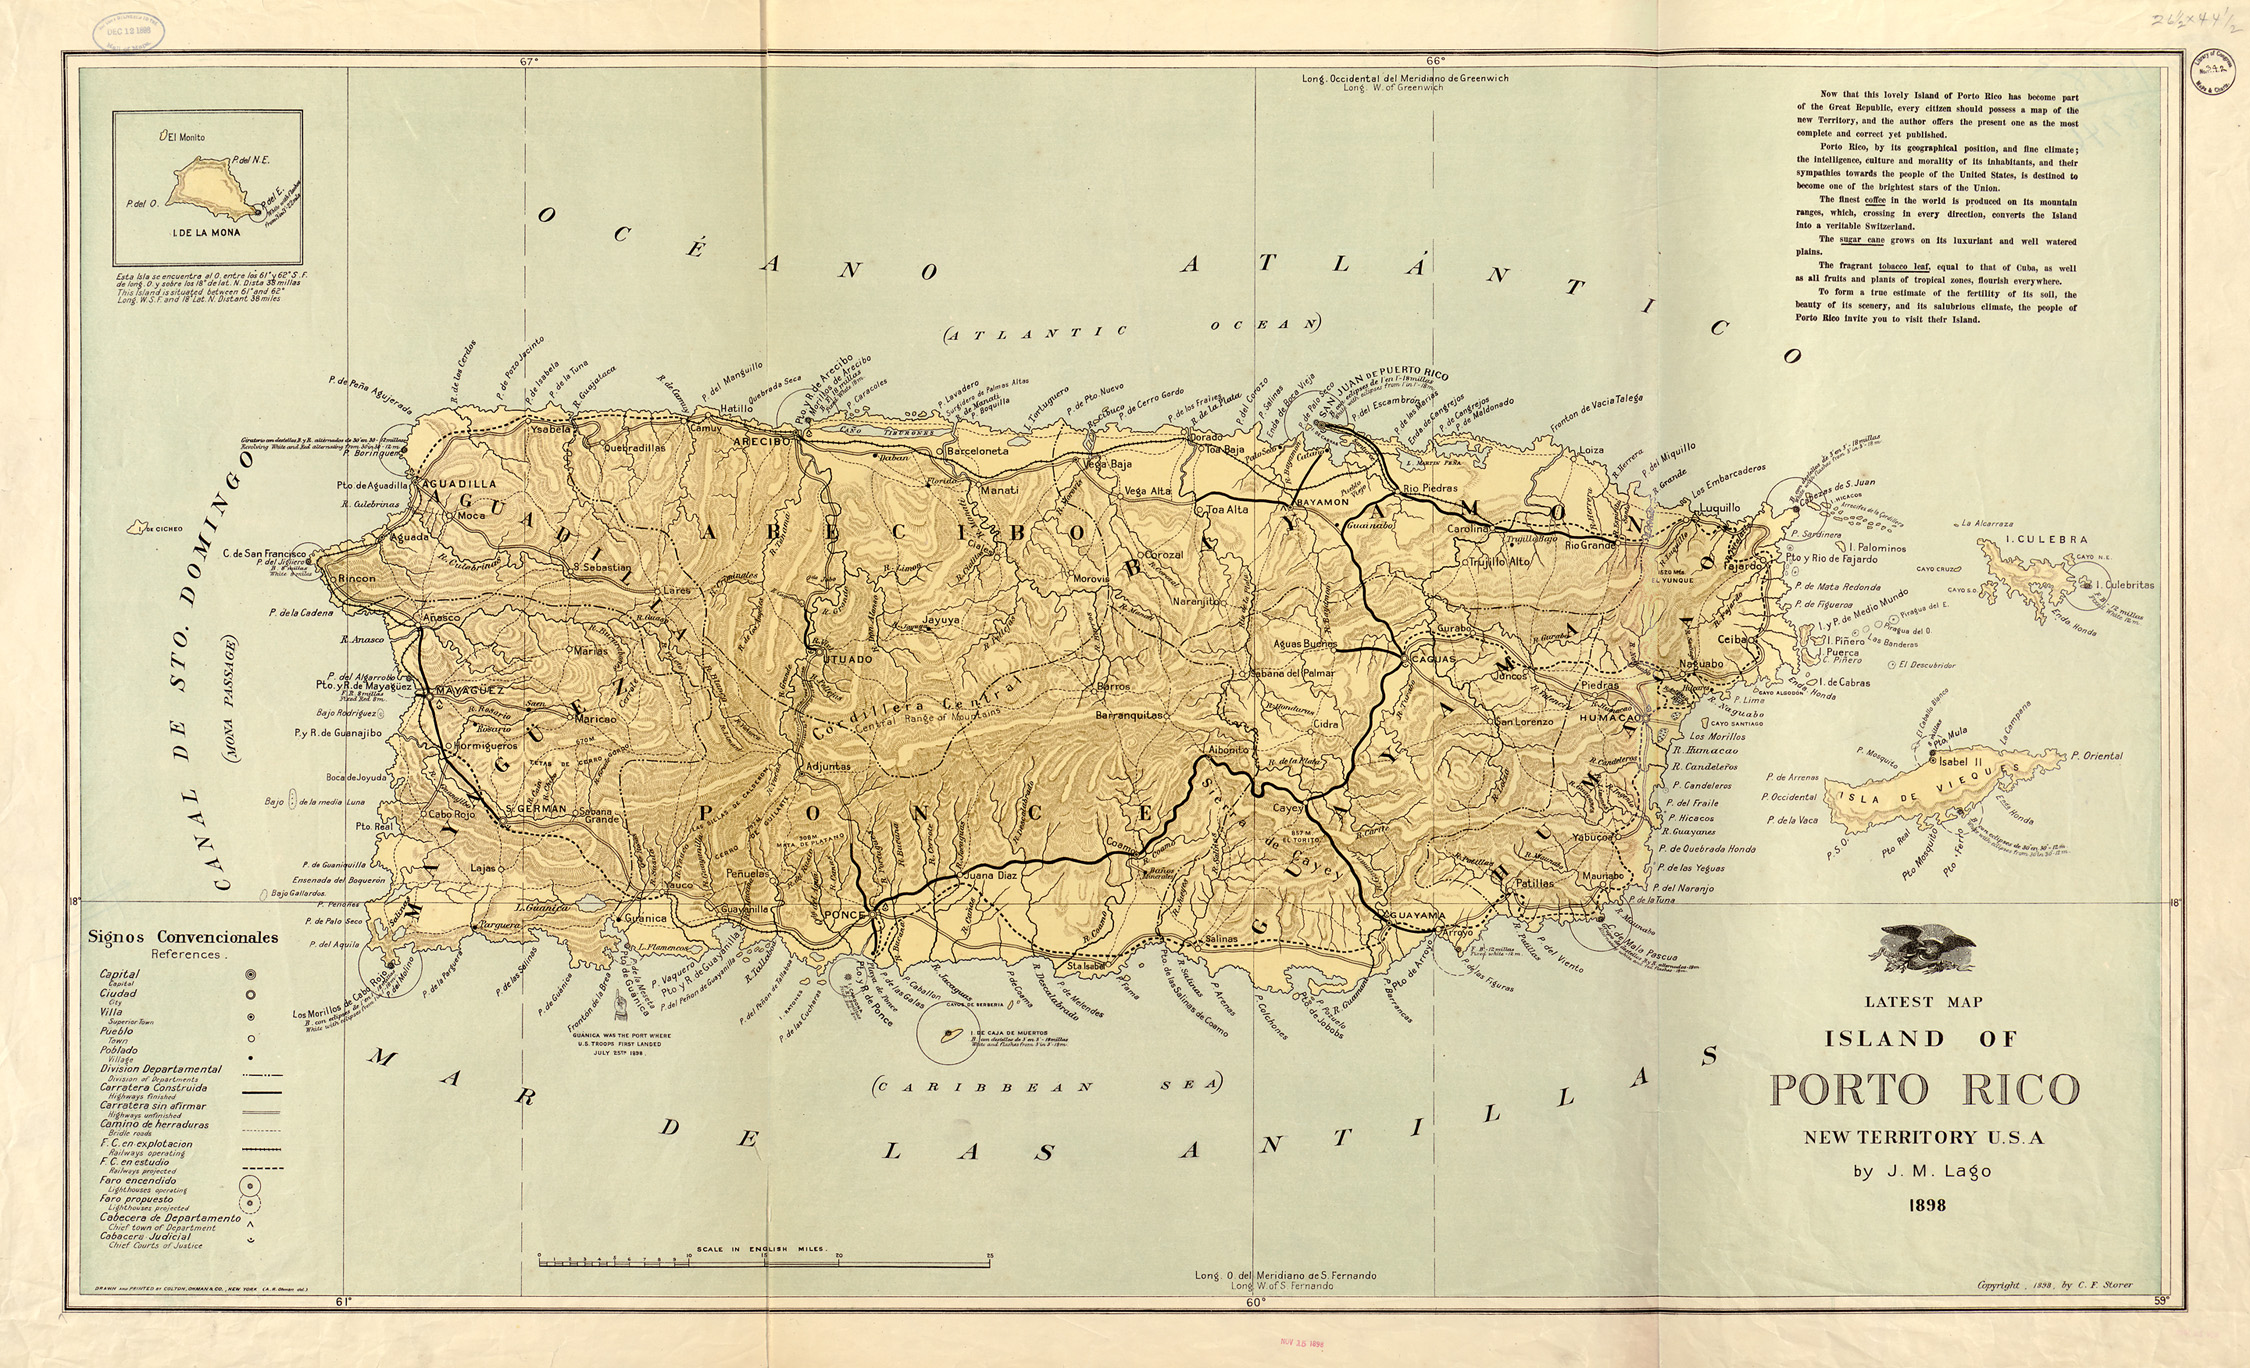 Pildiotsingu 1898 – Puerto Rico tulemus